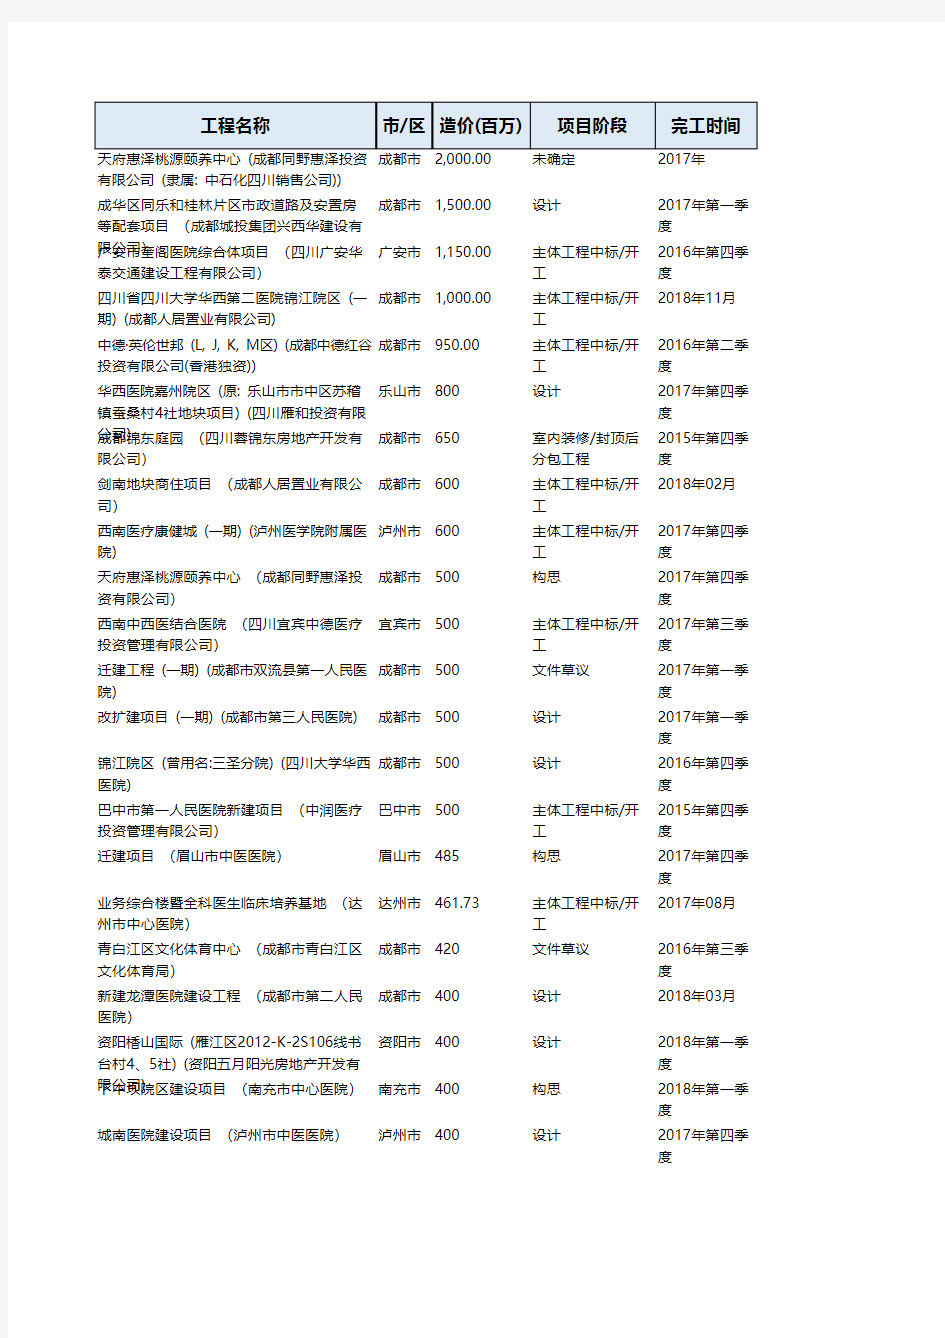 四川省2015年-2018年重点医院工程项目名单